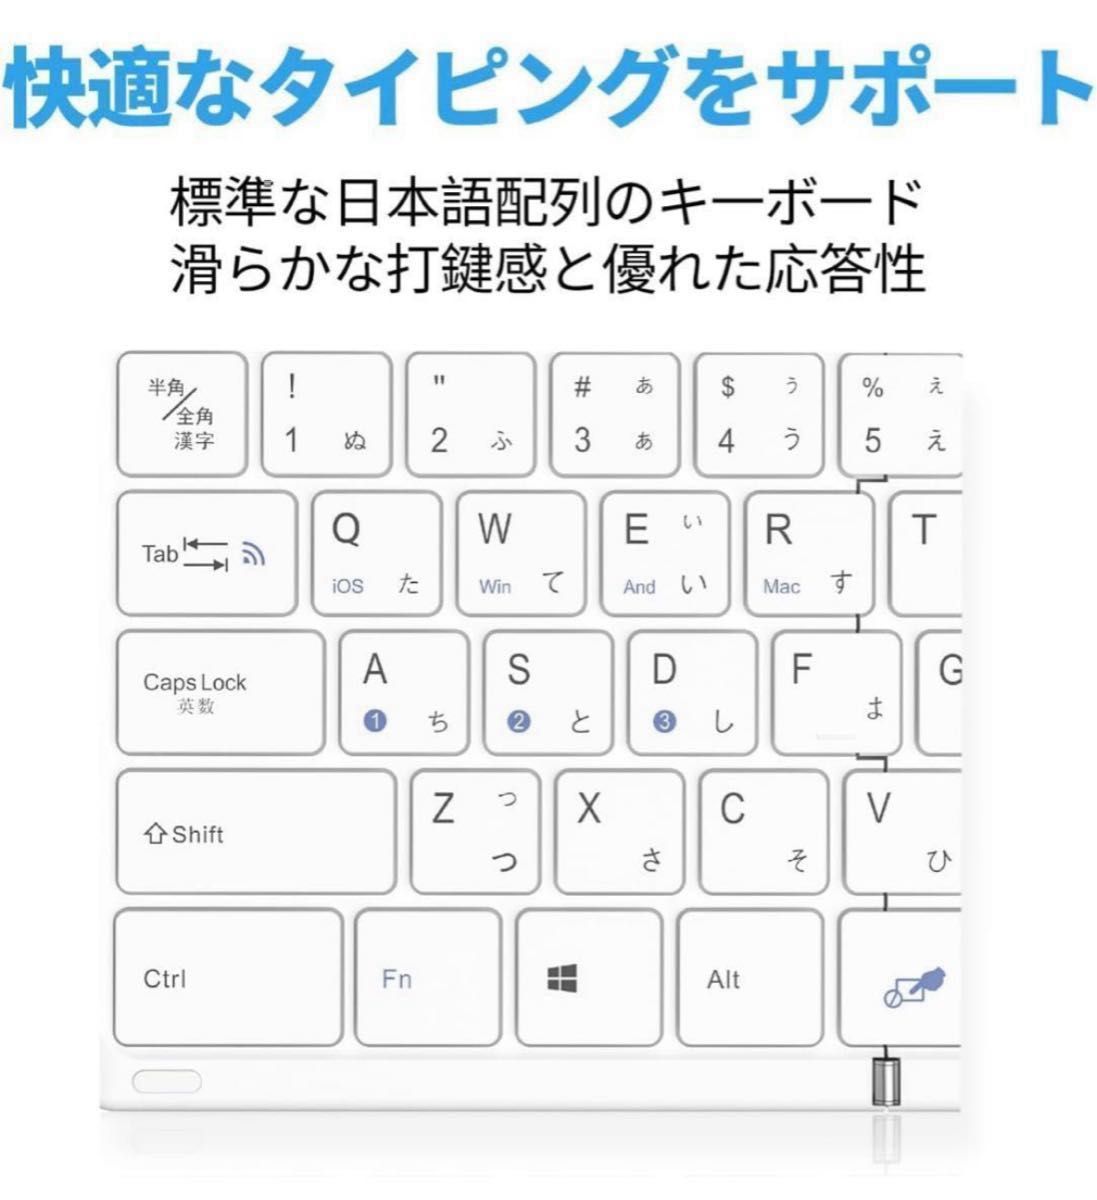 【高級版】Omikamo キーボード ワイヤレス 折り畳み式 ipad bluetooth 日本語配列 日本語説明書付き(白)